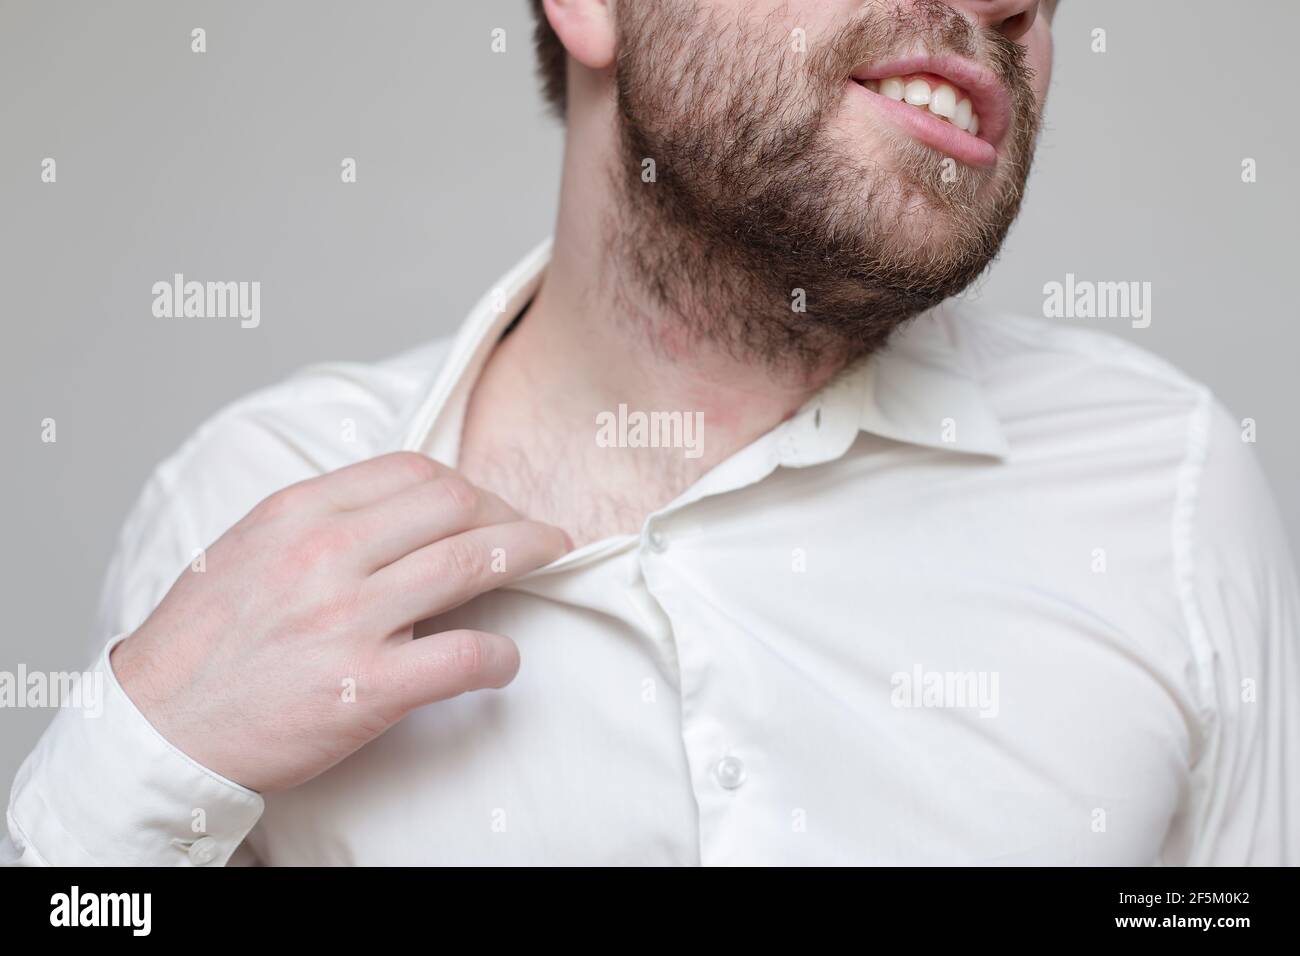 L'uomo bearded non si sente bene, soffoca e cerca di allargare il collare della sua camicia. Foto Stock